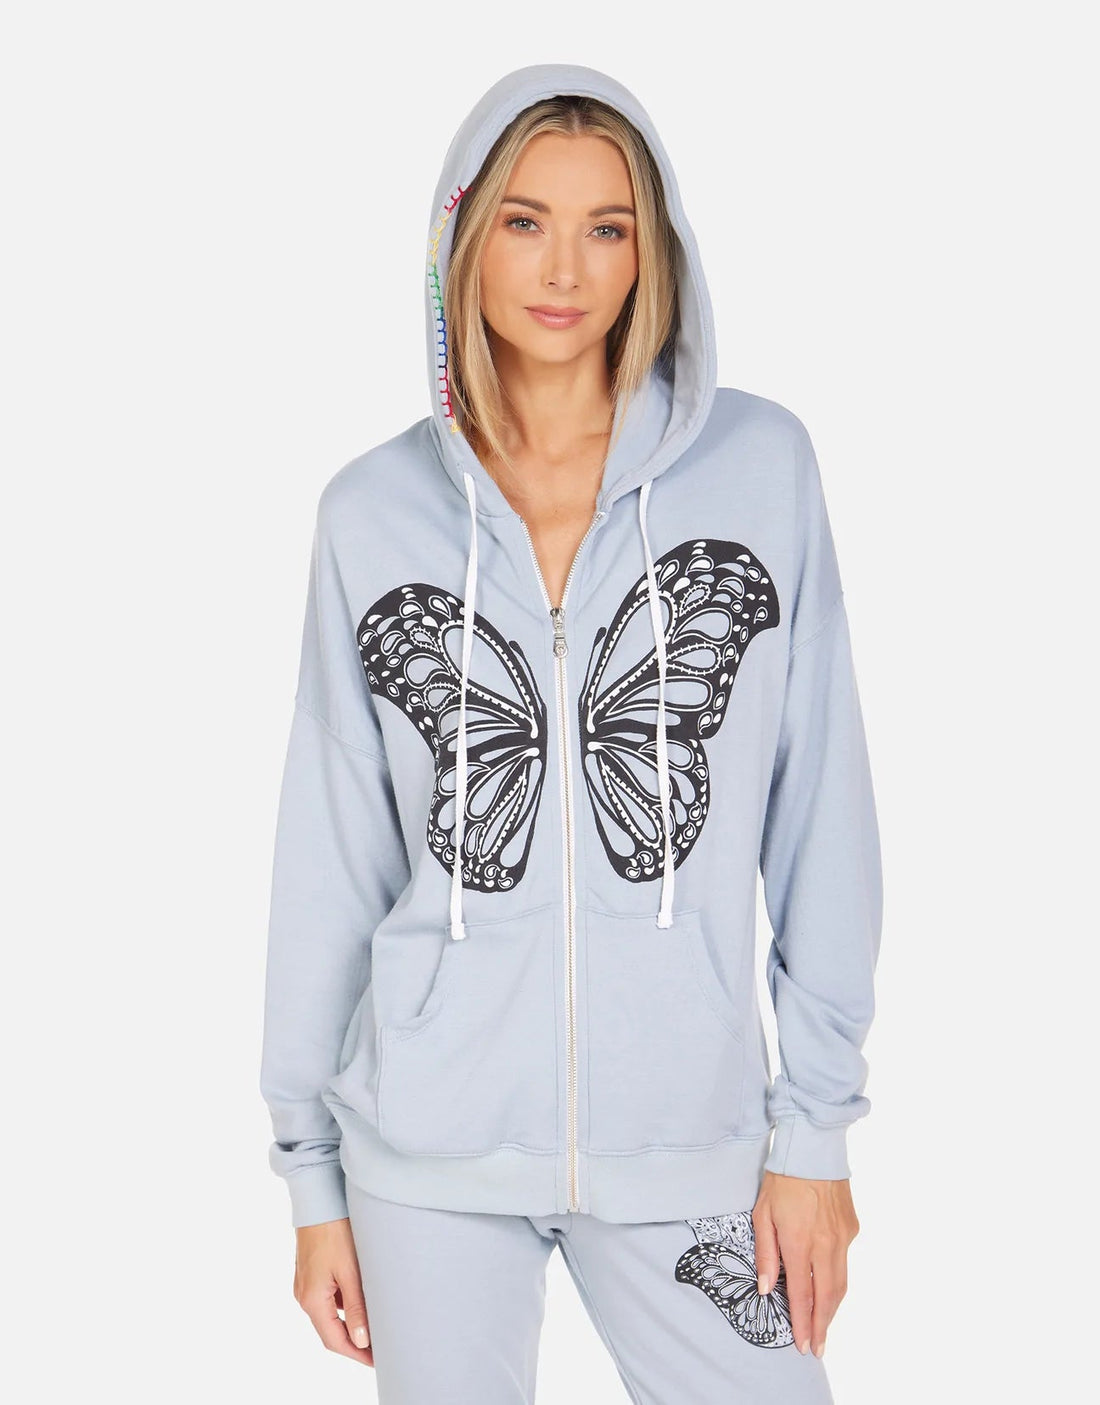 Shop Lauren Moshi Koa Butterfly Hamsa Zip up Hoodie - Premium Zip Up Hoodie from Lauren Moshi Online now at Spoiled Brat 